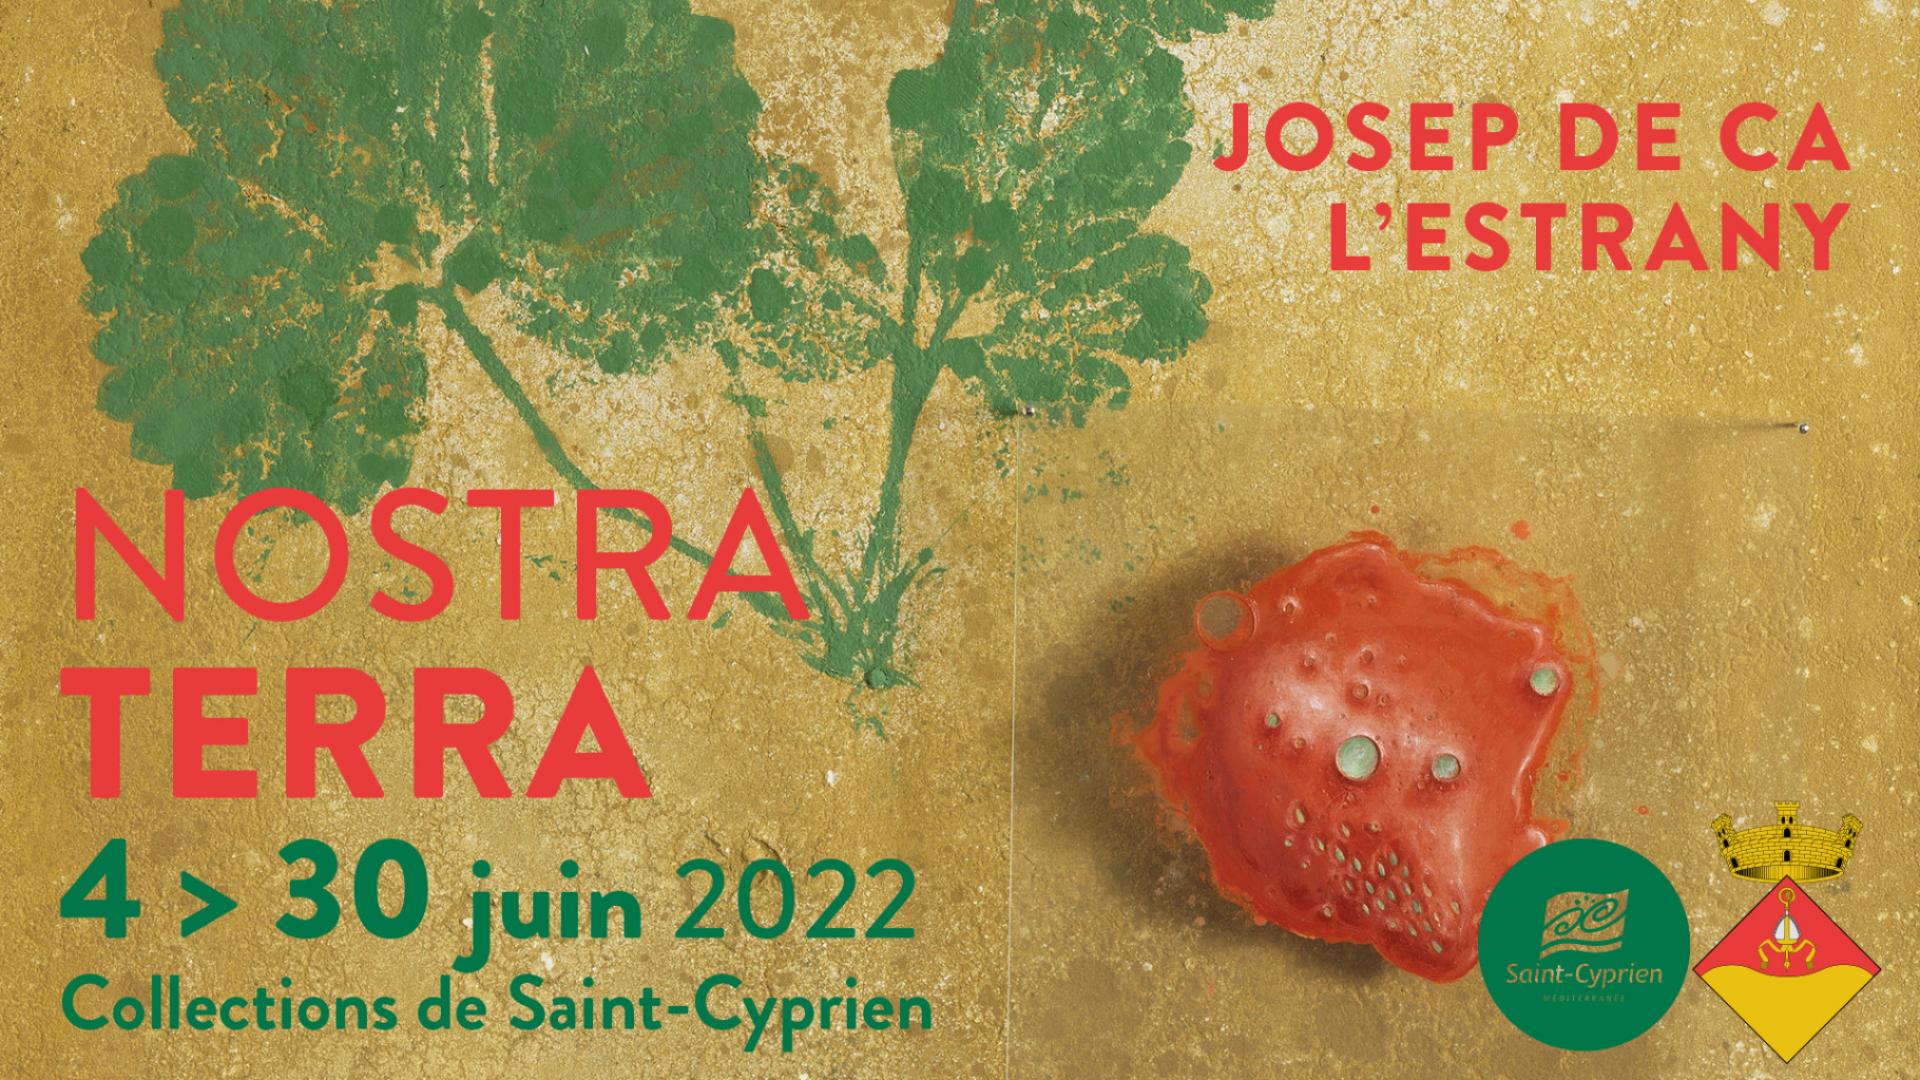 EXPOSITION "NOSTRA TERRA"  JOSEP DE CA L'ESTRANY